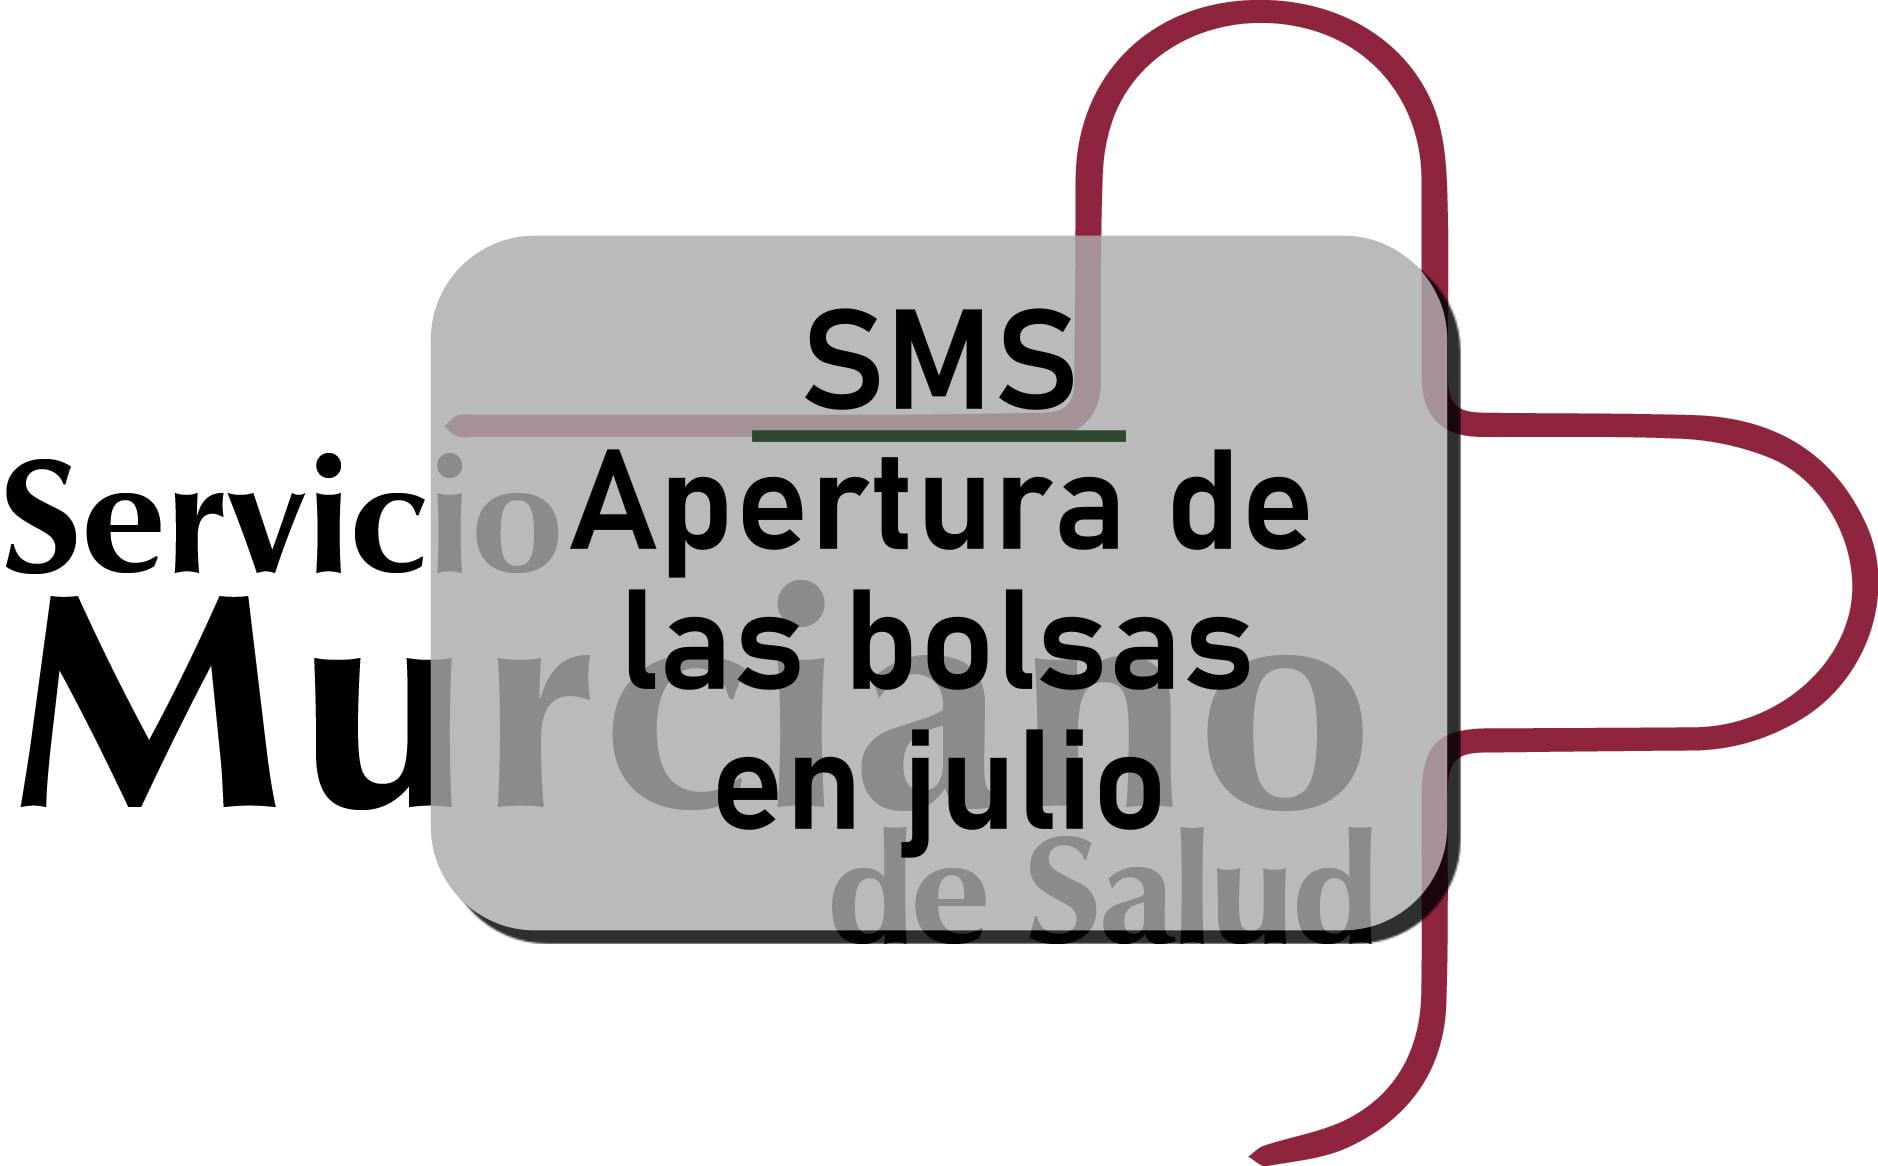 SMS bolsas